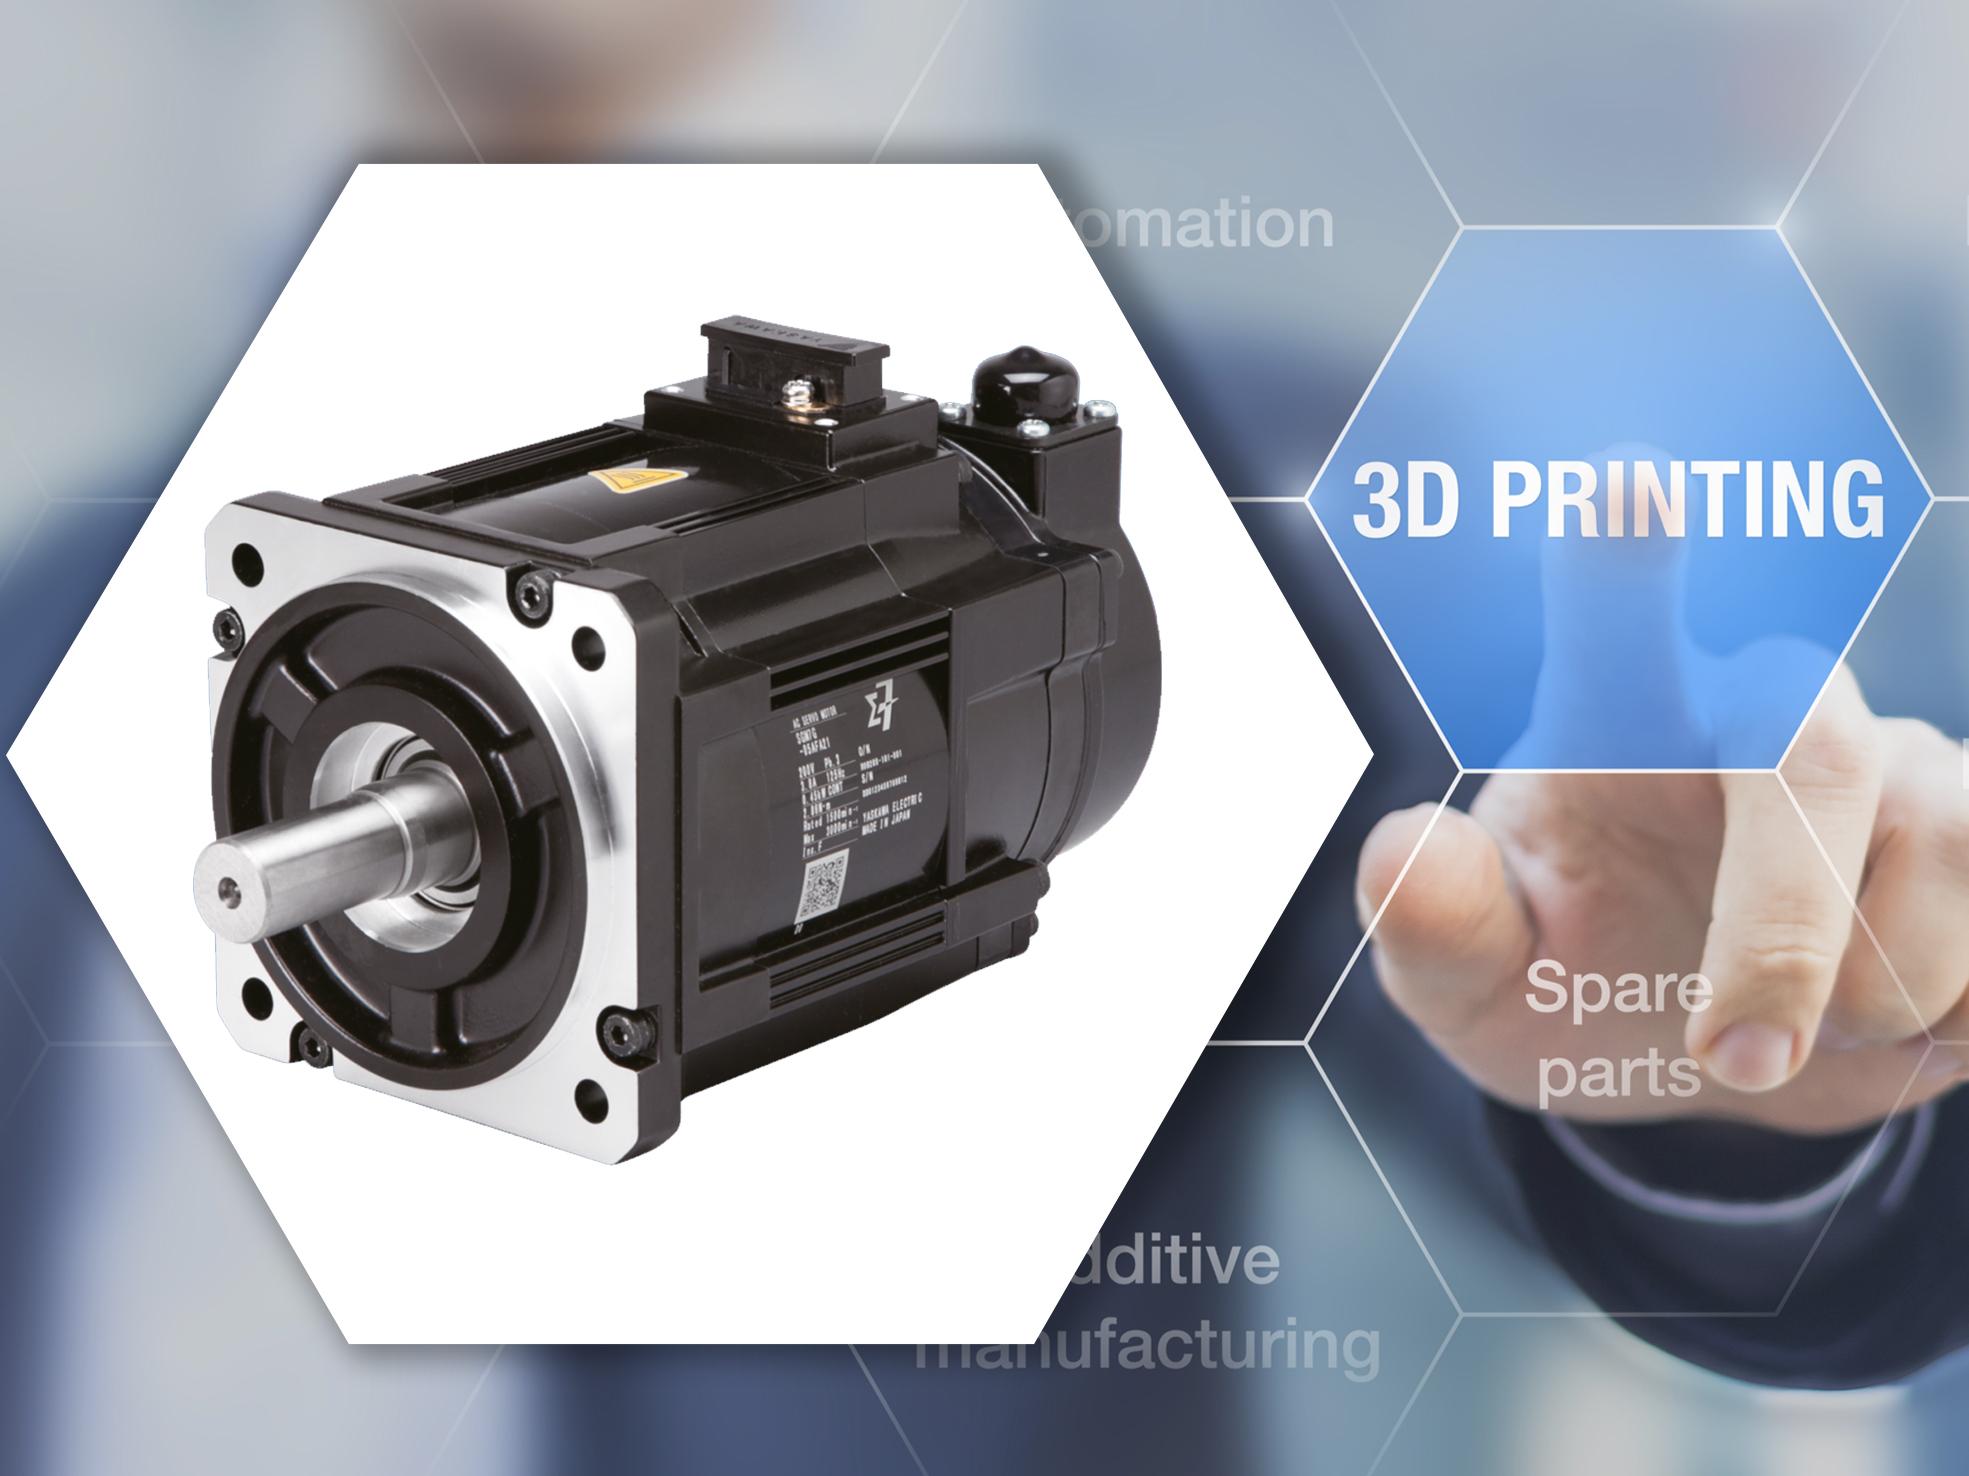 Advanced servo motors transforming 3D metal printing